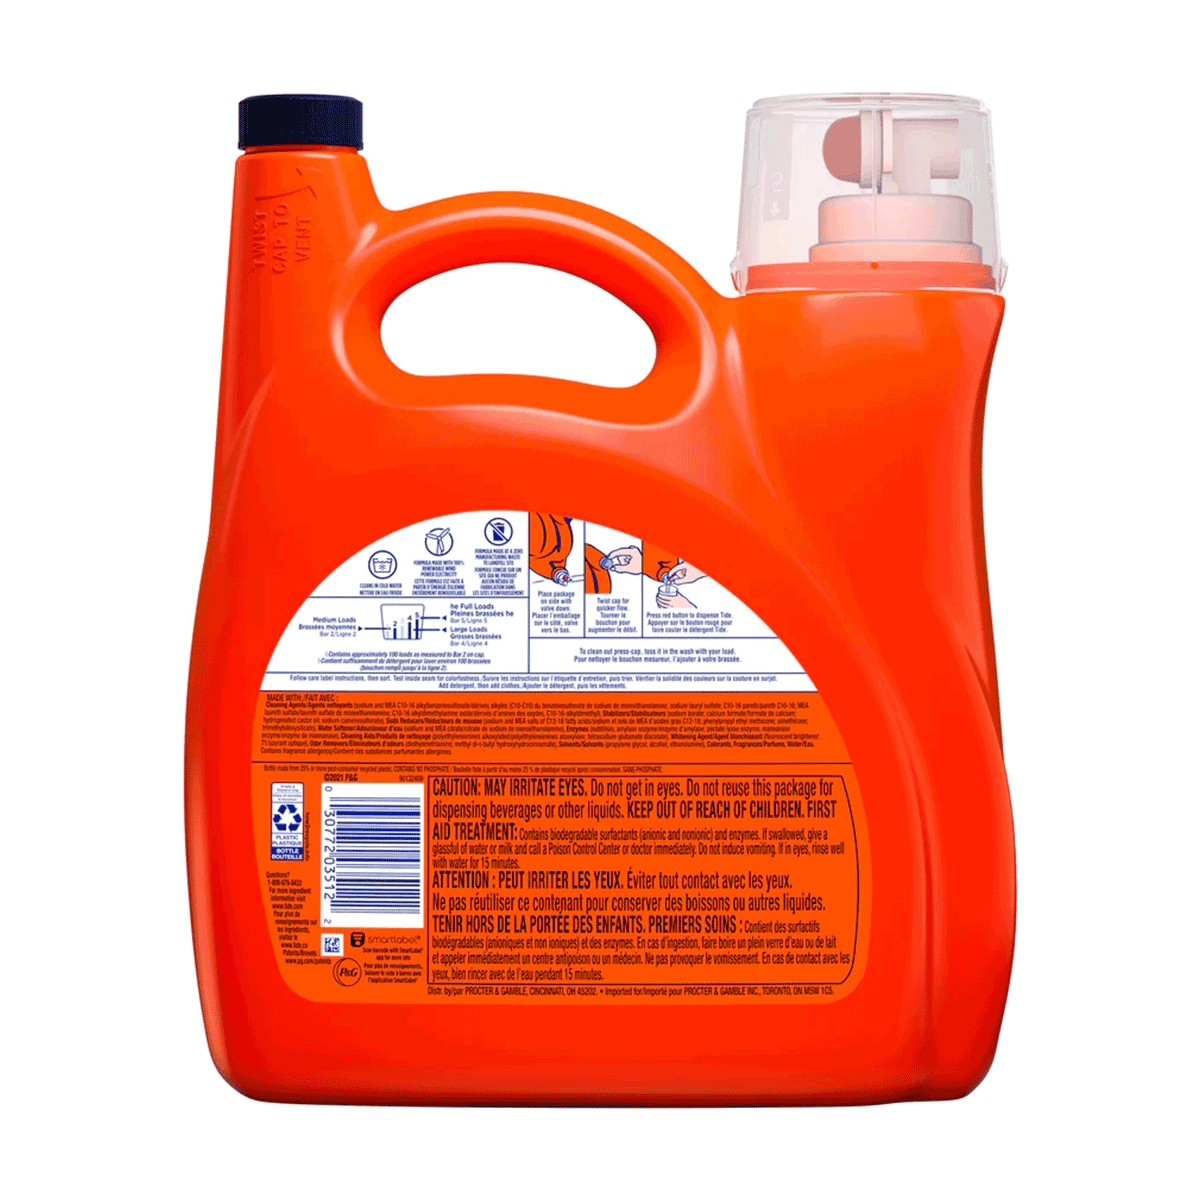 Detergente líquido concentrado para ropa Tide Ultra Oxi Odor Eliminator 4,55 litros (100 cargas)